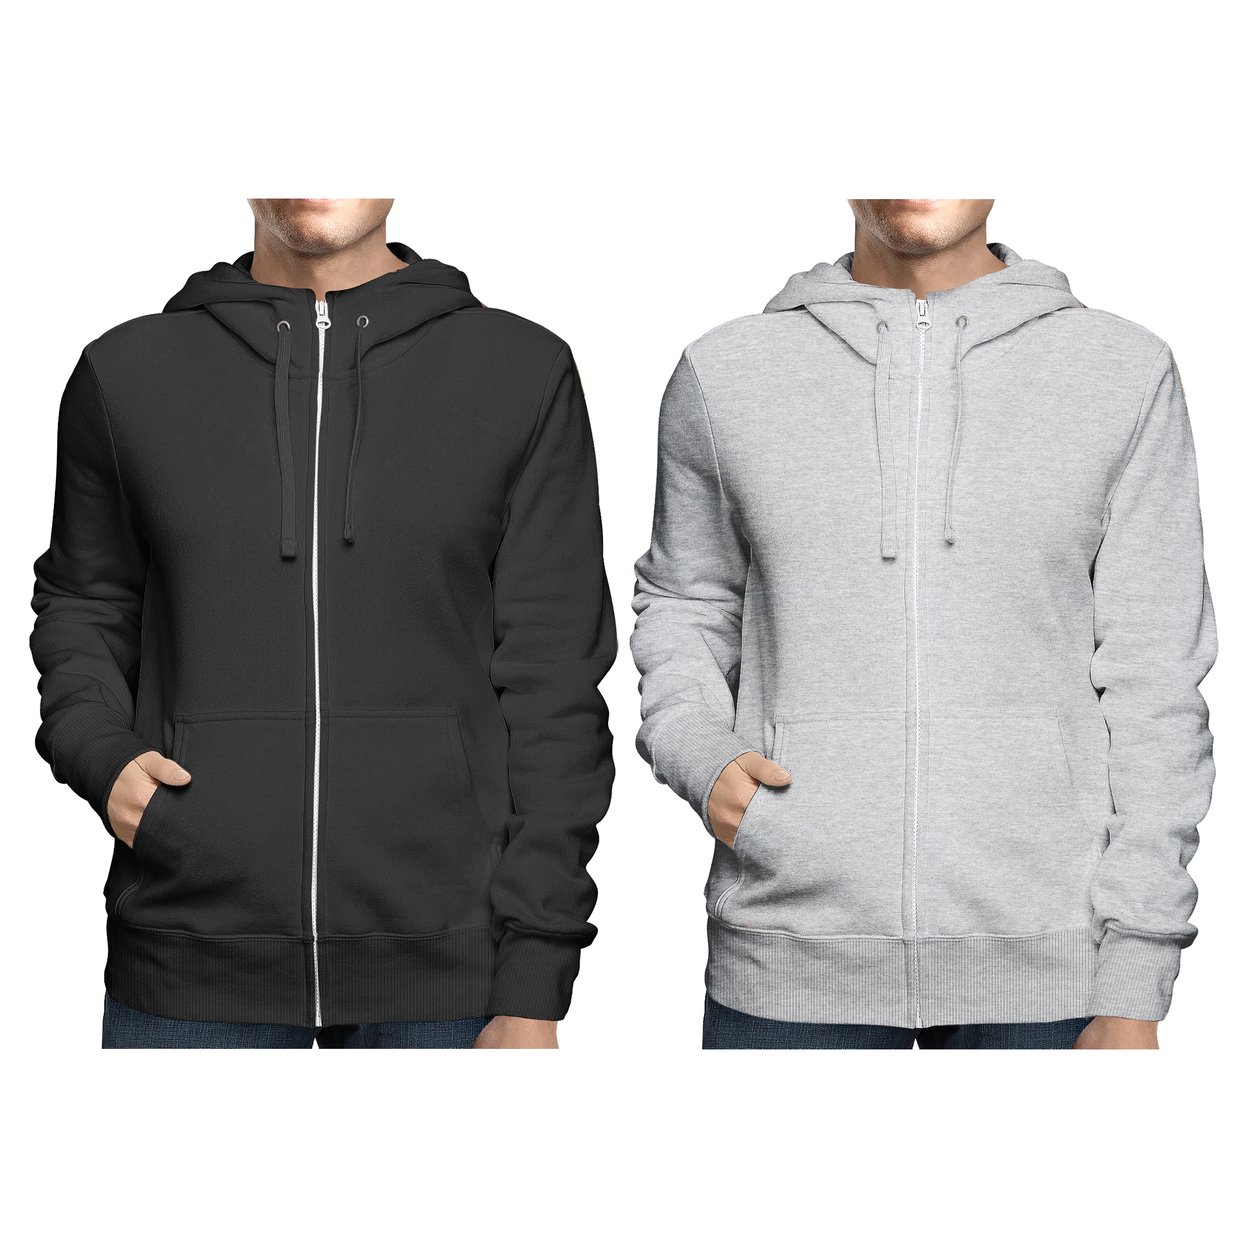 2-Pack: Men's Winter Warm Soft Full Zip-Up Fleece Lined Hoodie Sweatshirt - Black & Grey, X-large